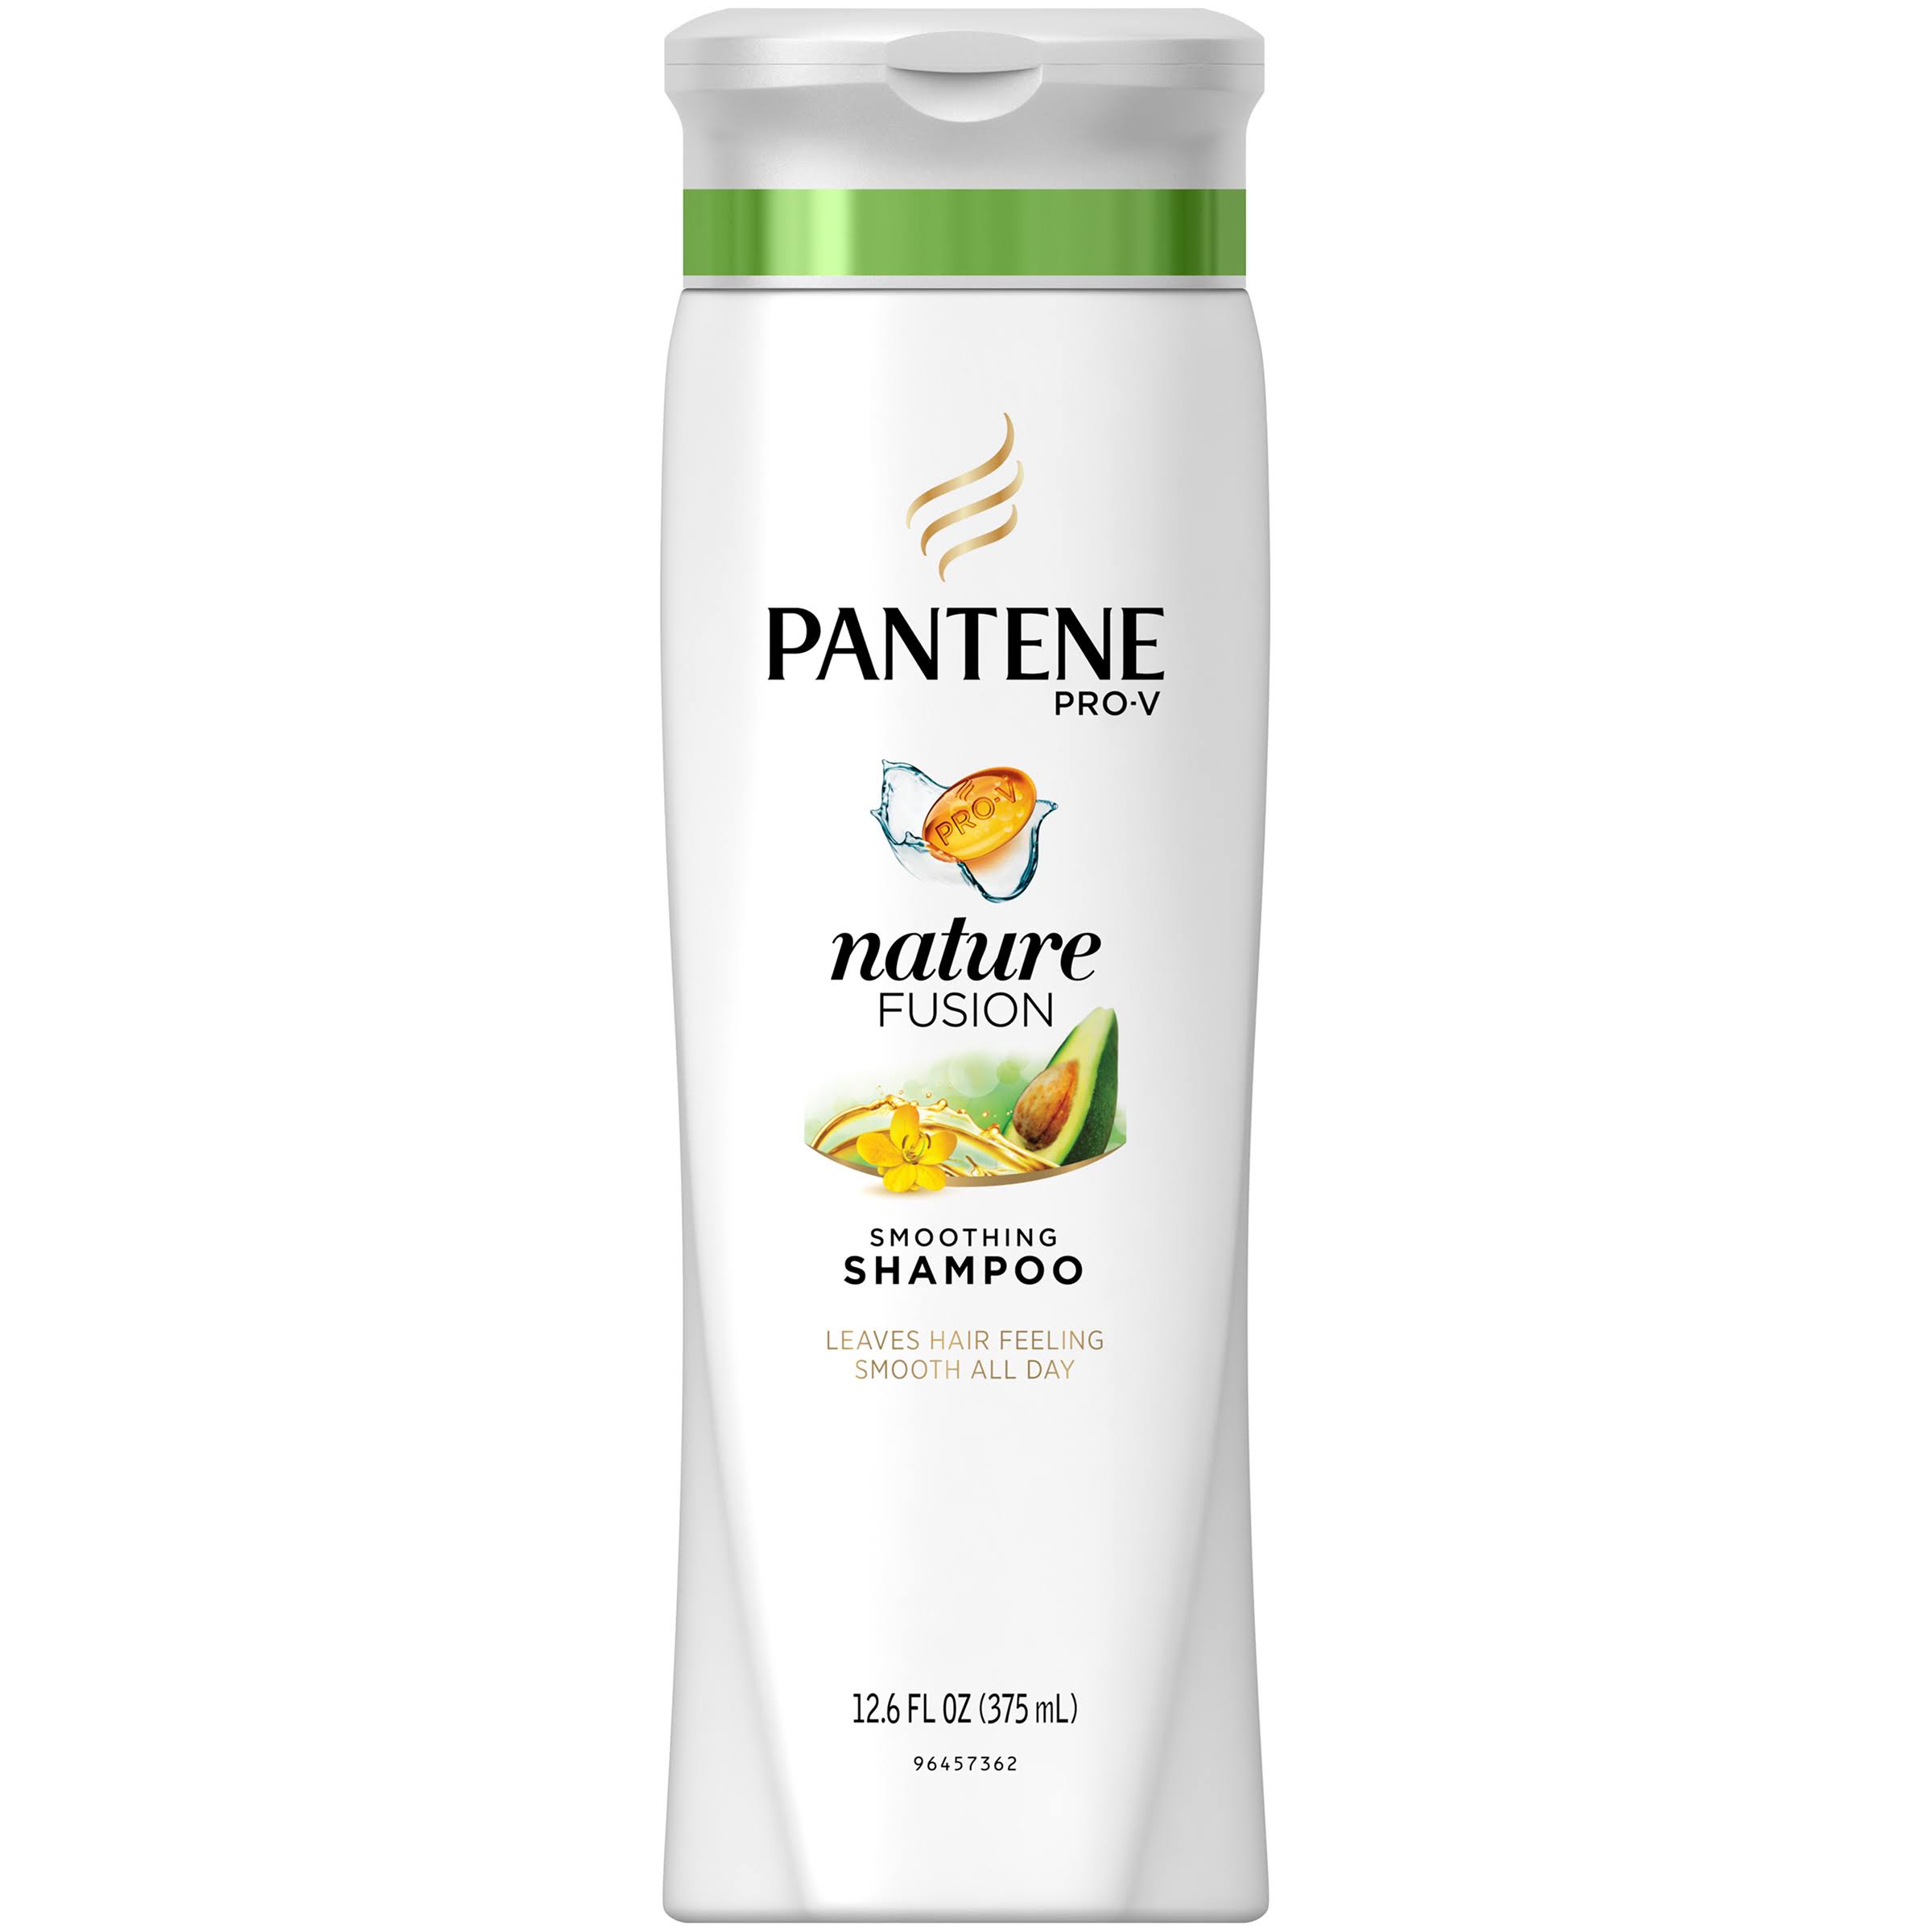 Pantene Pro V Nature Fusion Smoothing Shampoo - 12.6oz